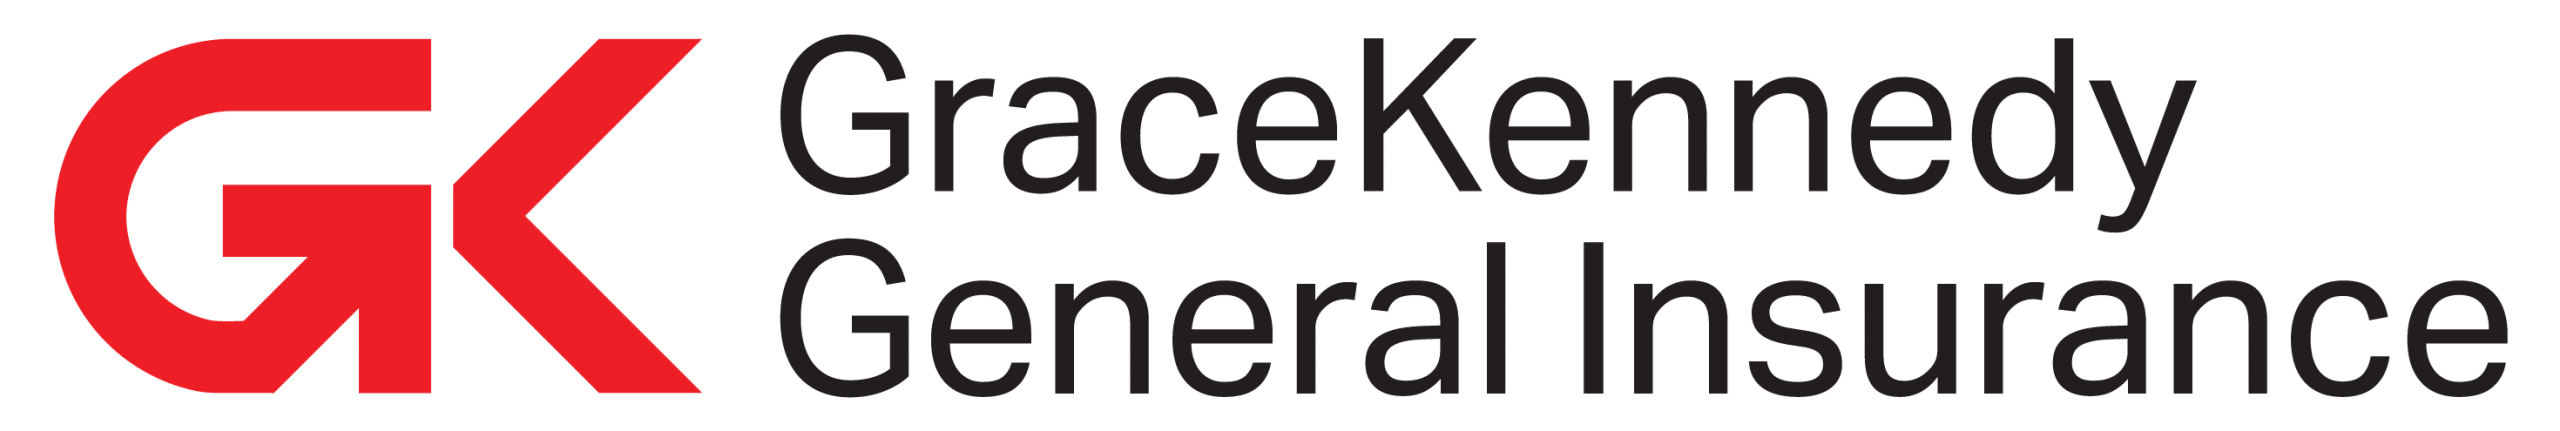 gracekennedy General Insurance Logo